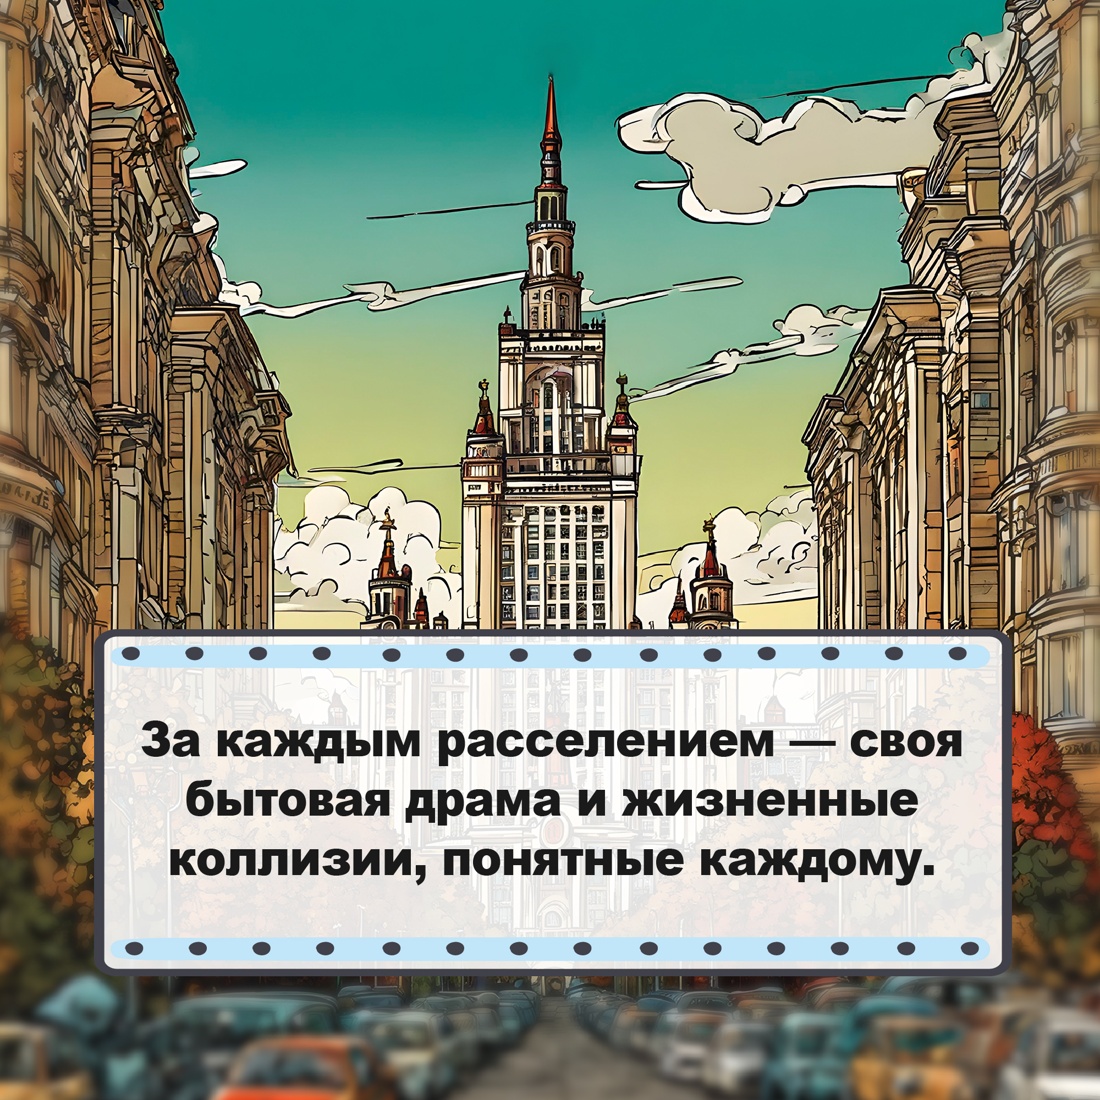 Промо материал к книге "Москва. Квартирная симфония" №4